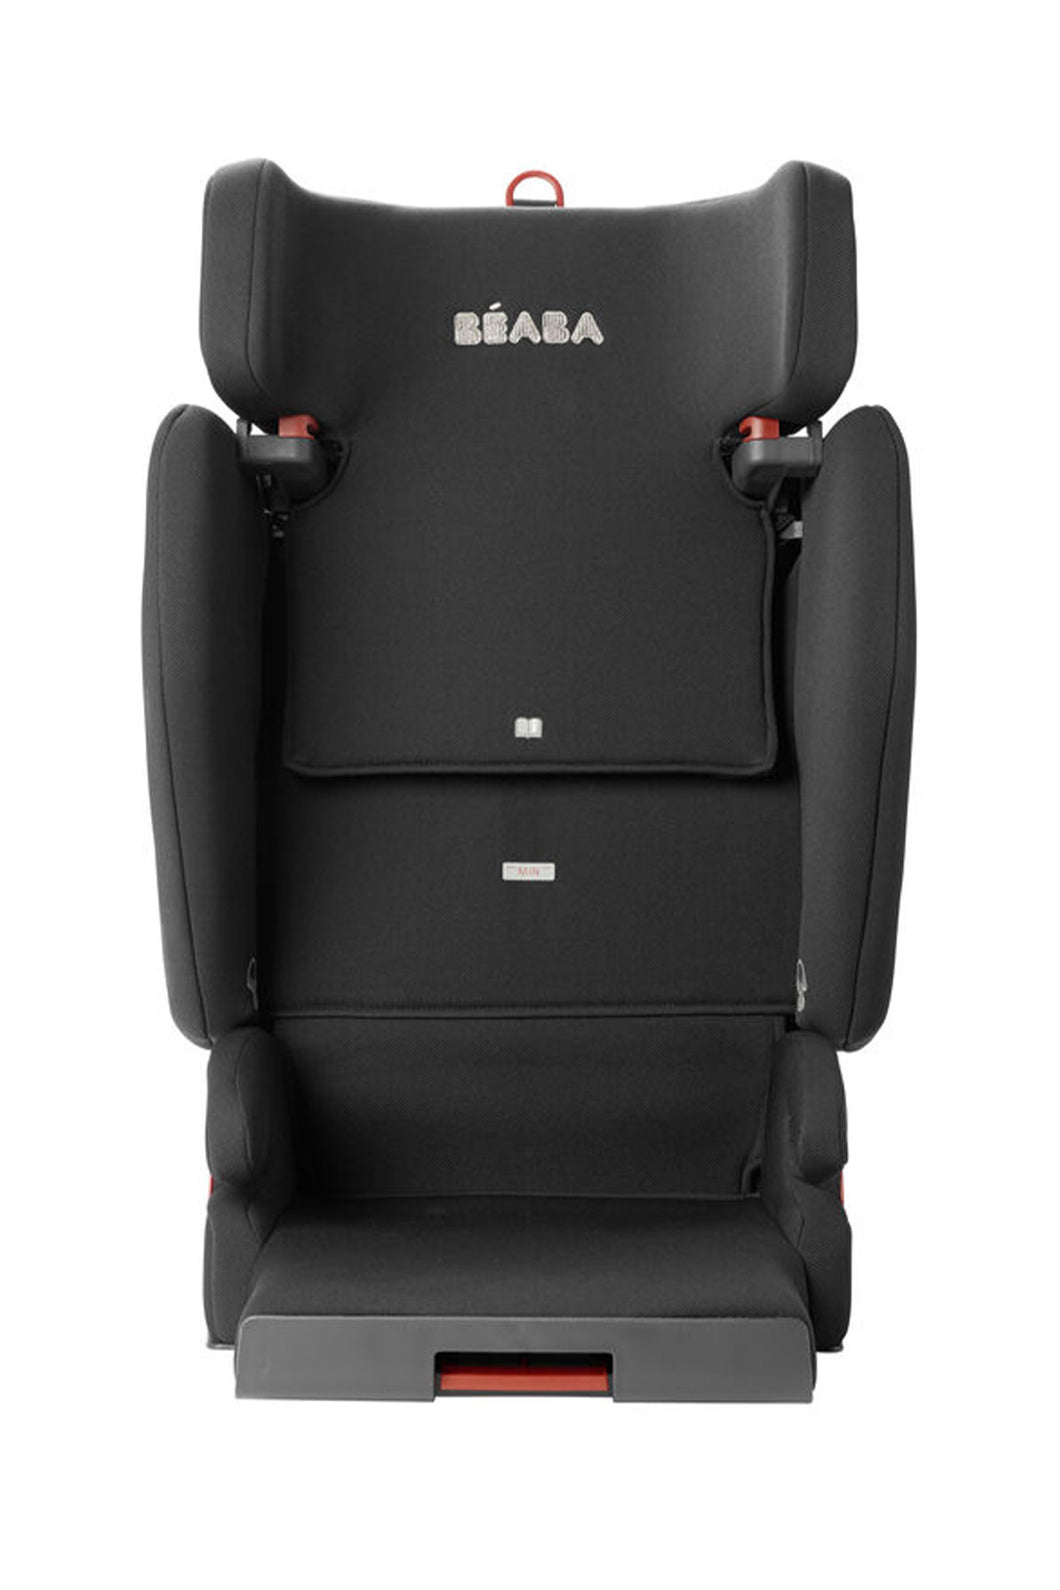 Beaba Purseat Fix Isofix Car Seat